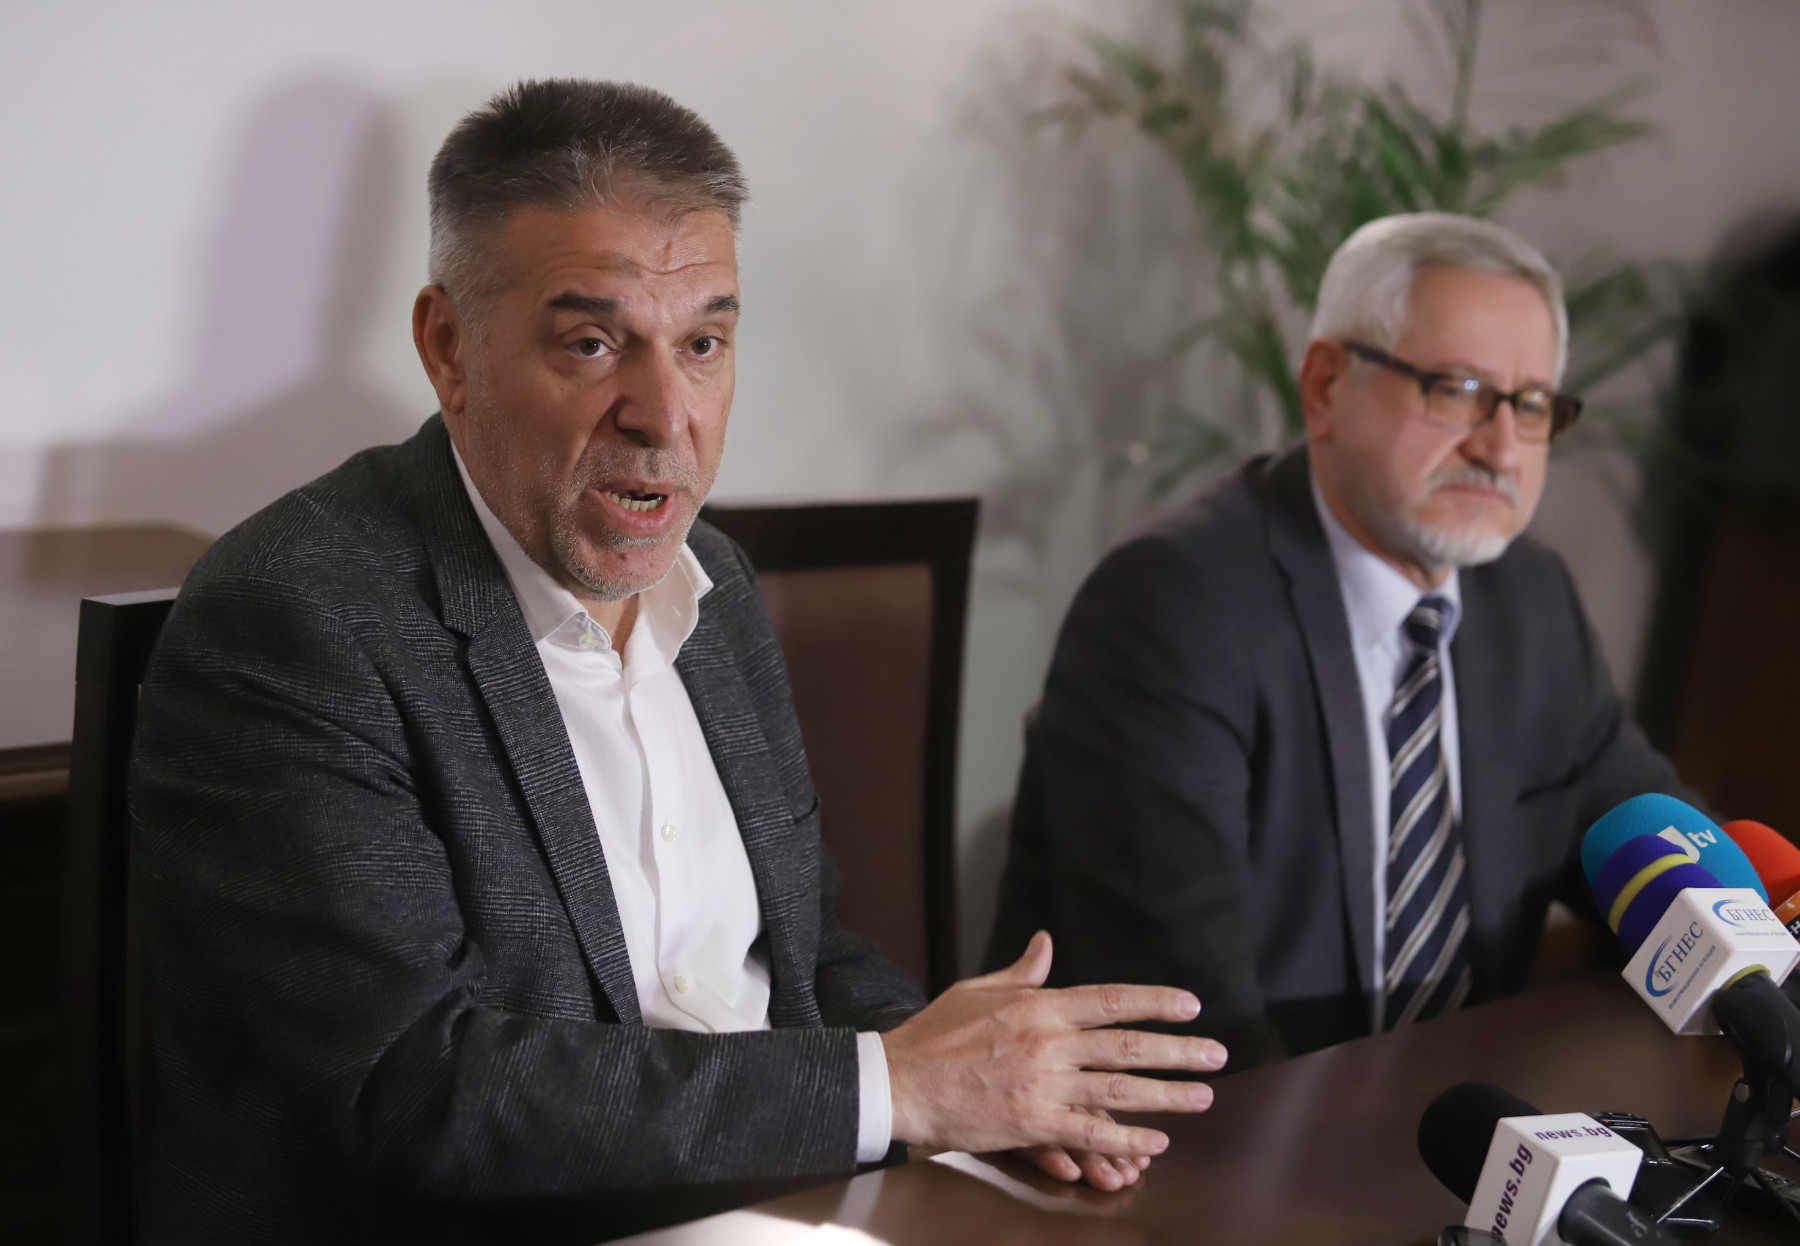 Скопие поиска спиране на работата на историческата комисия за 2 години